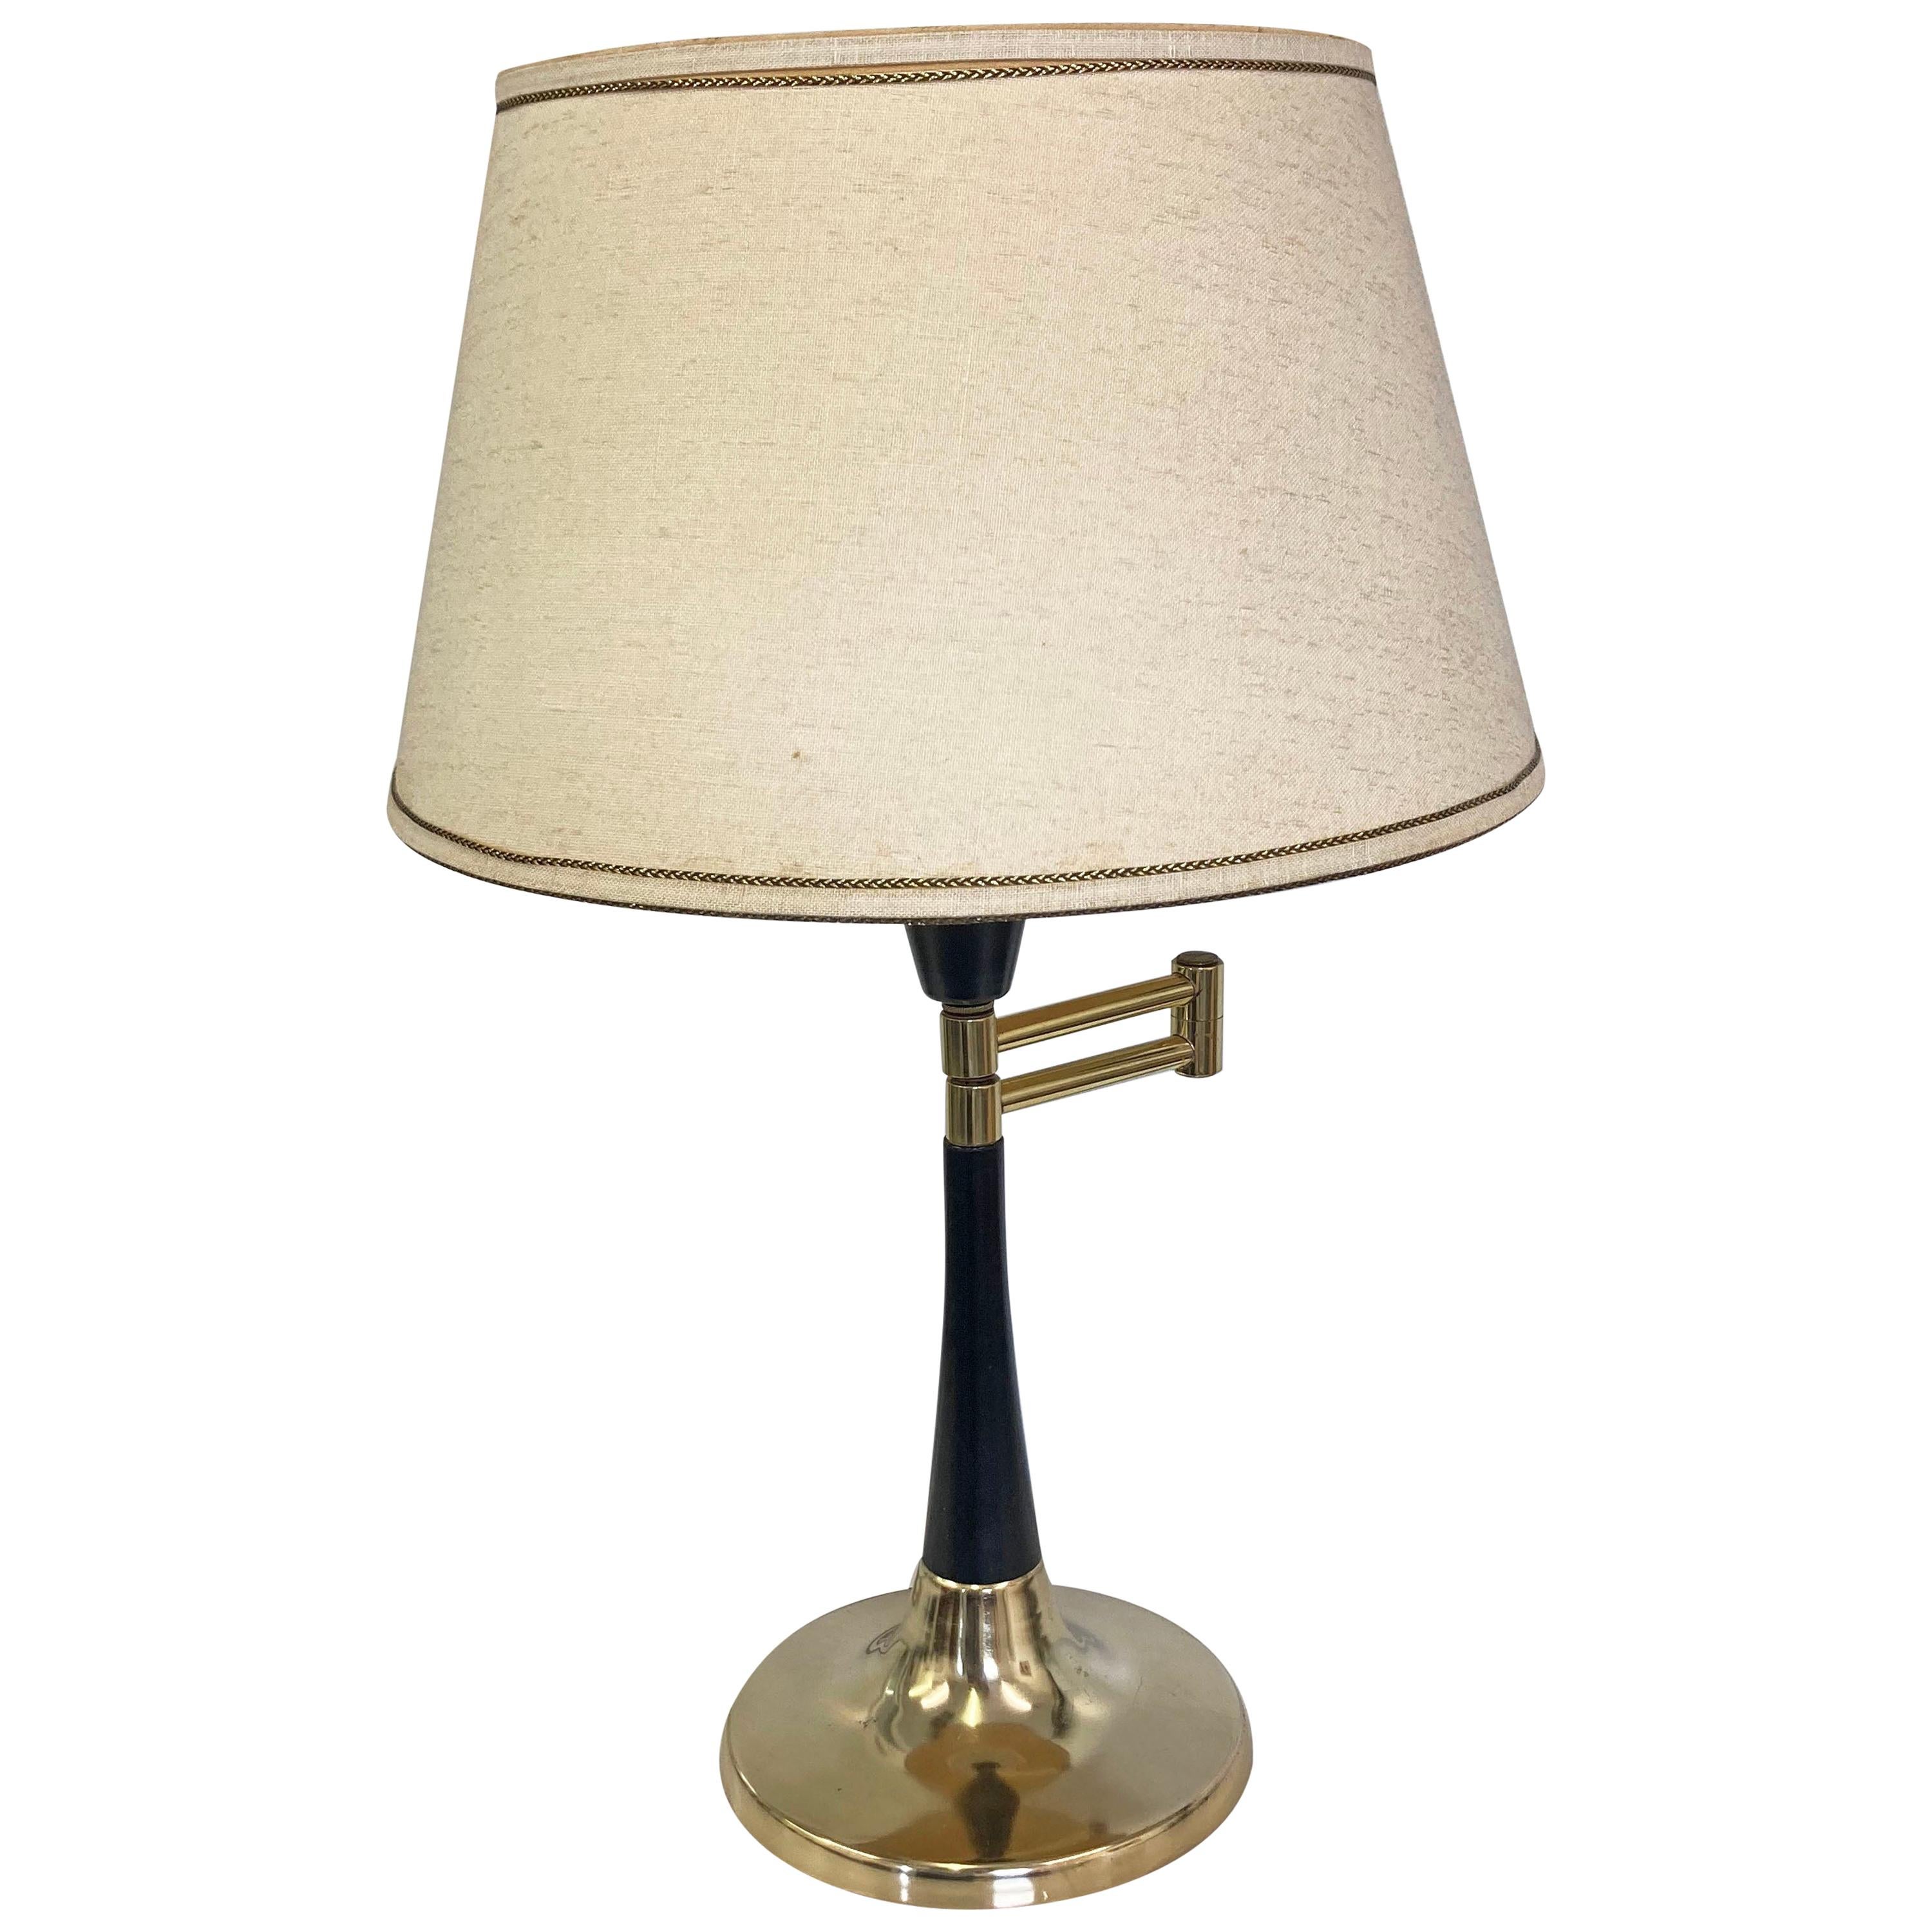 Lampe de table à bras pivotant, moderne du milieu du siècle dernier, par Underwriters Laboratories